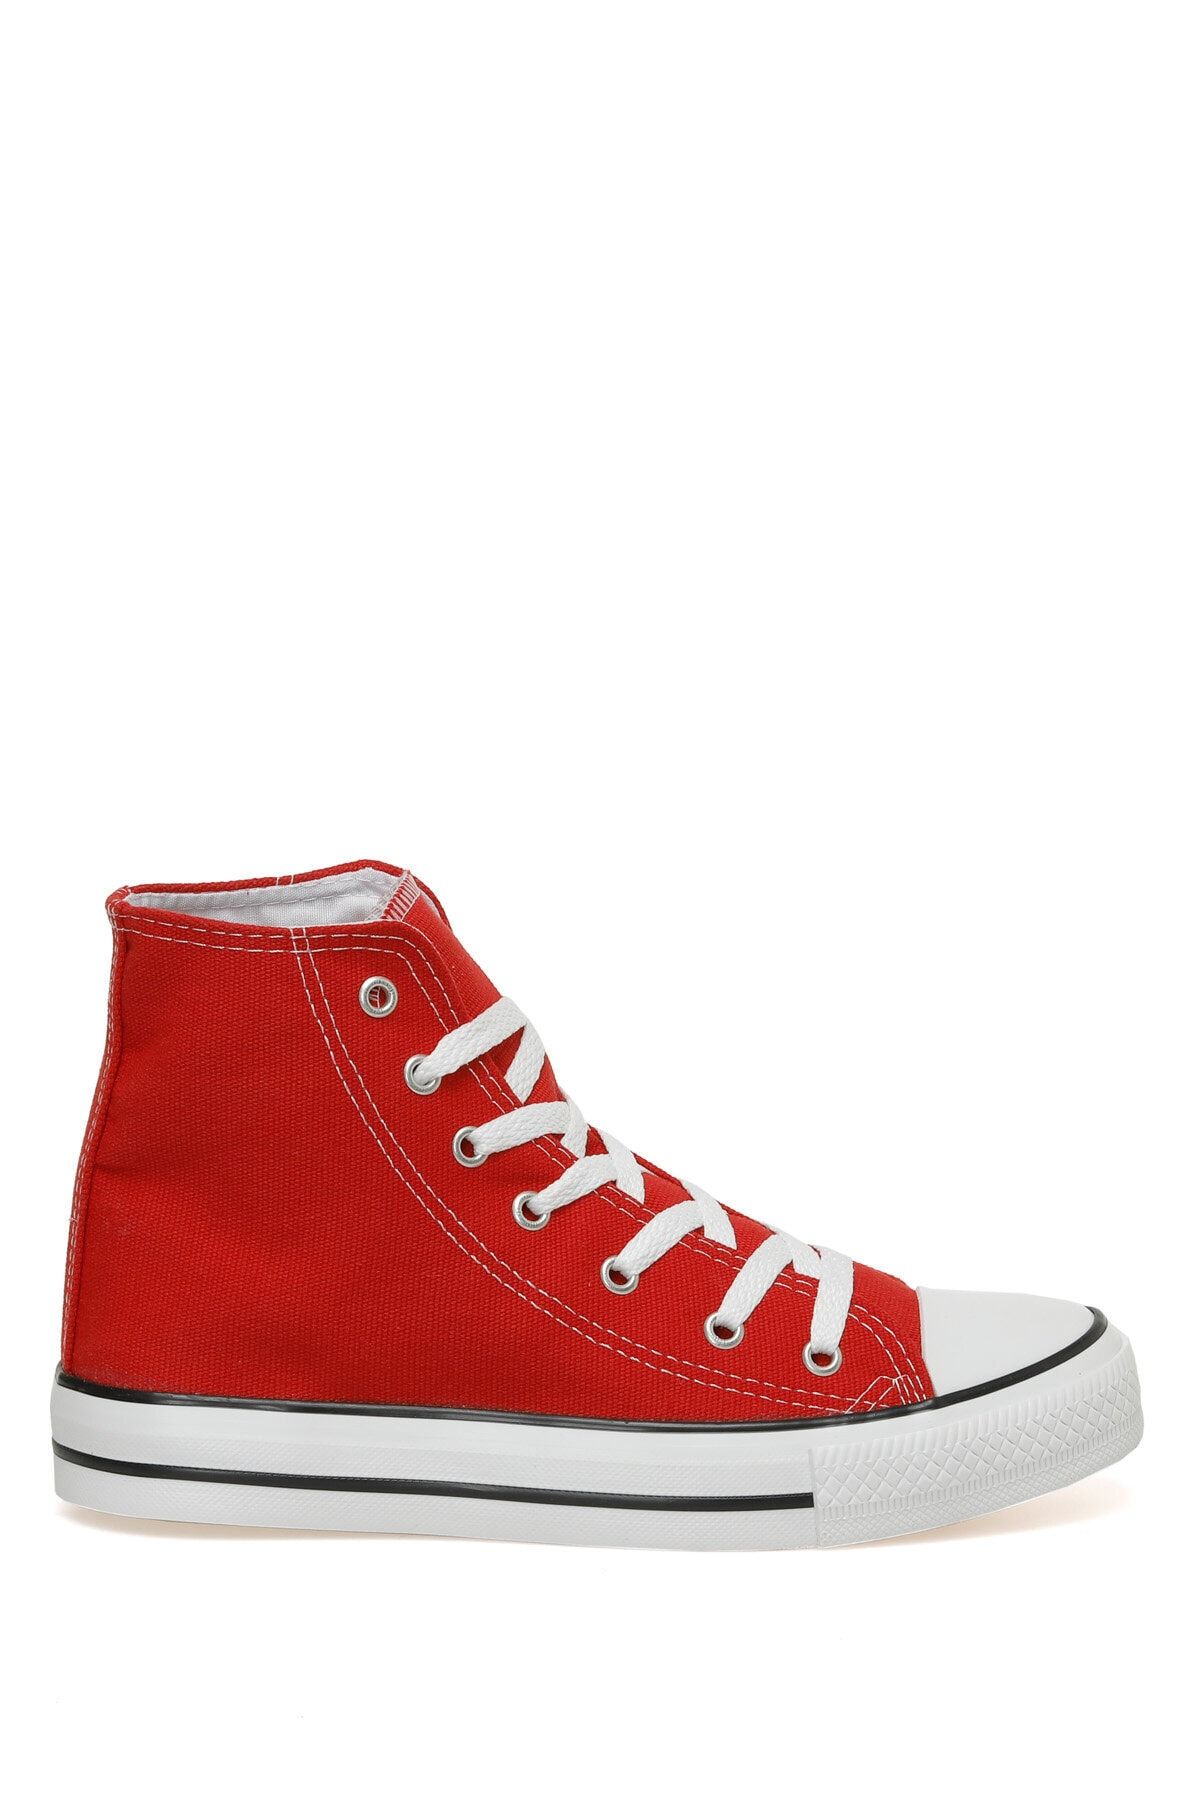 Polaris 317514.z 3fx Kırmızı Kadın Sneaker